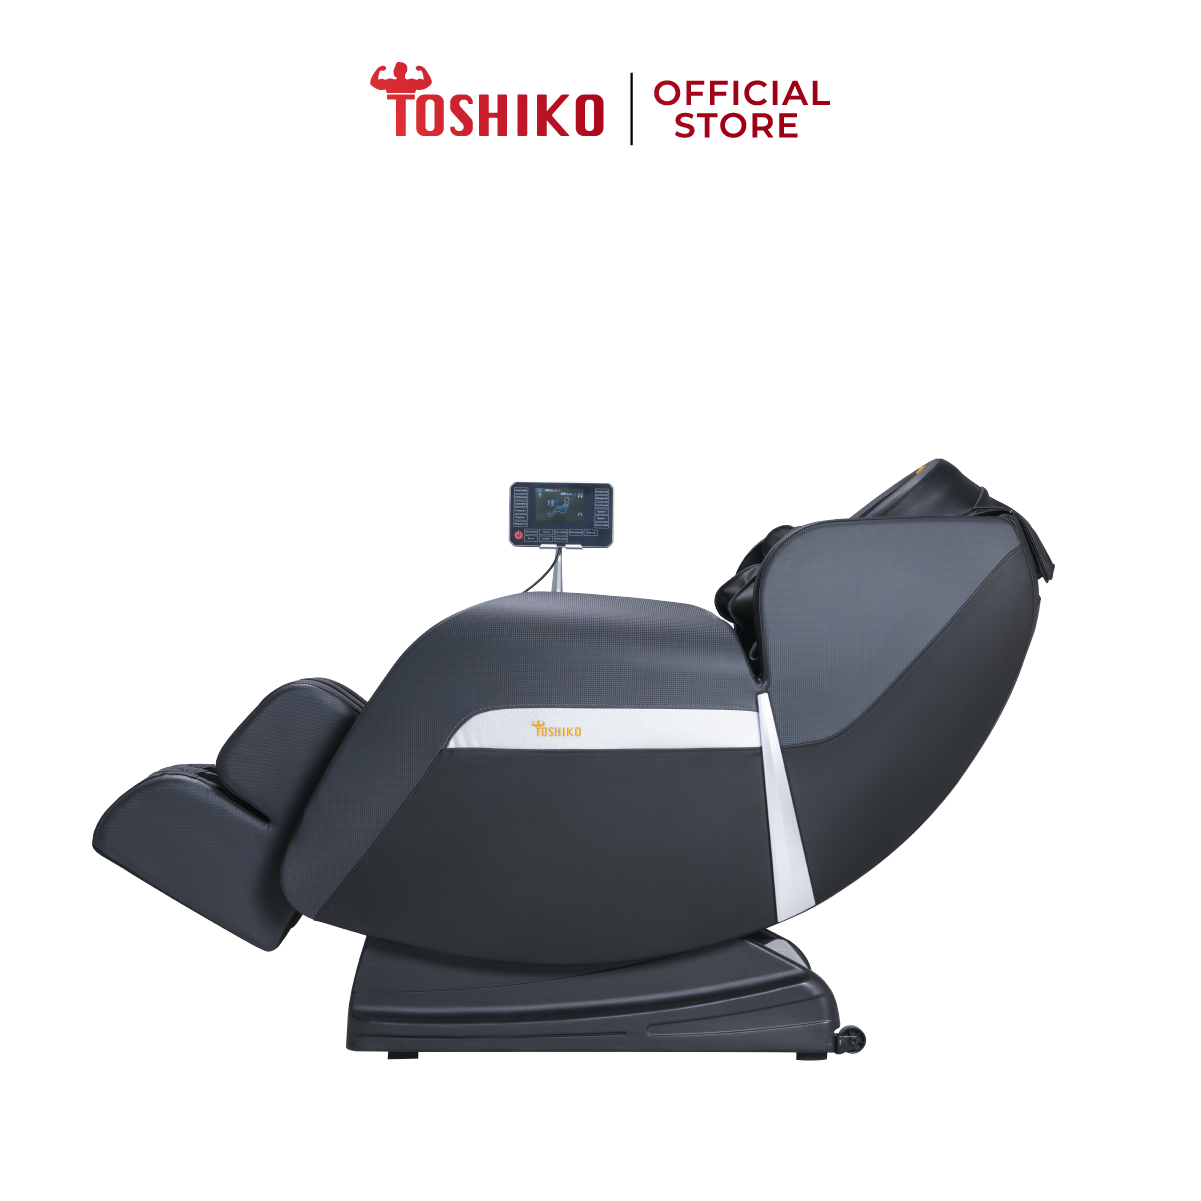 Ghế massage trị liệu toàn thân Toshiko T21